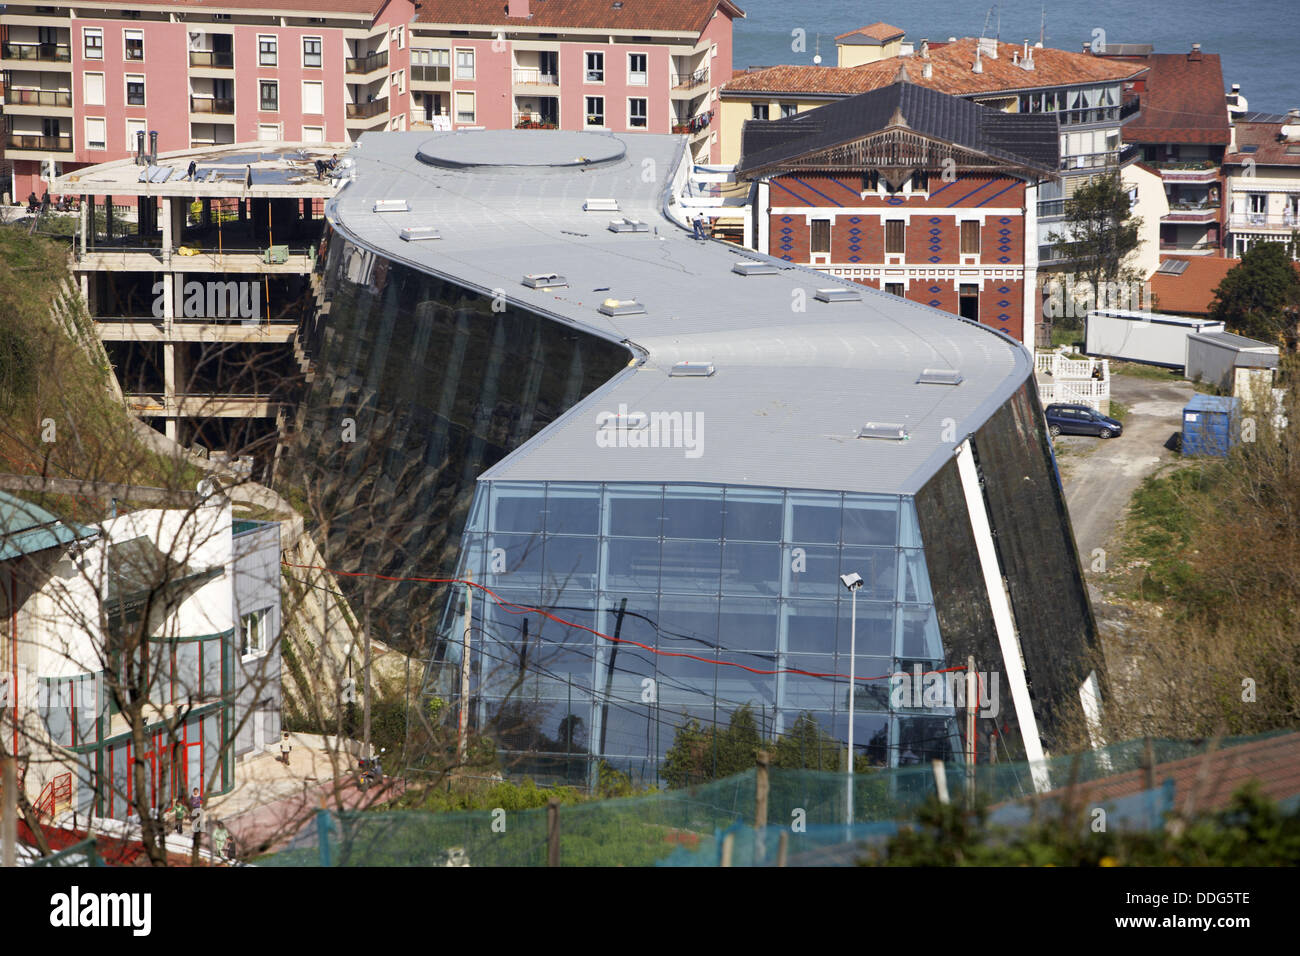 Foundation Cristobal Balenciaga building, Guetaria. Guipuzcoa, Basque  Country, Spain Stock Photo - Alamy